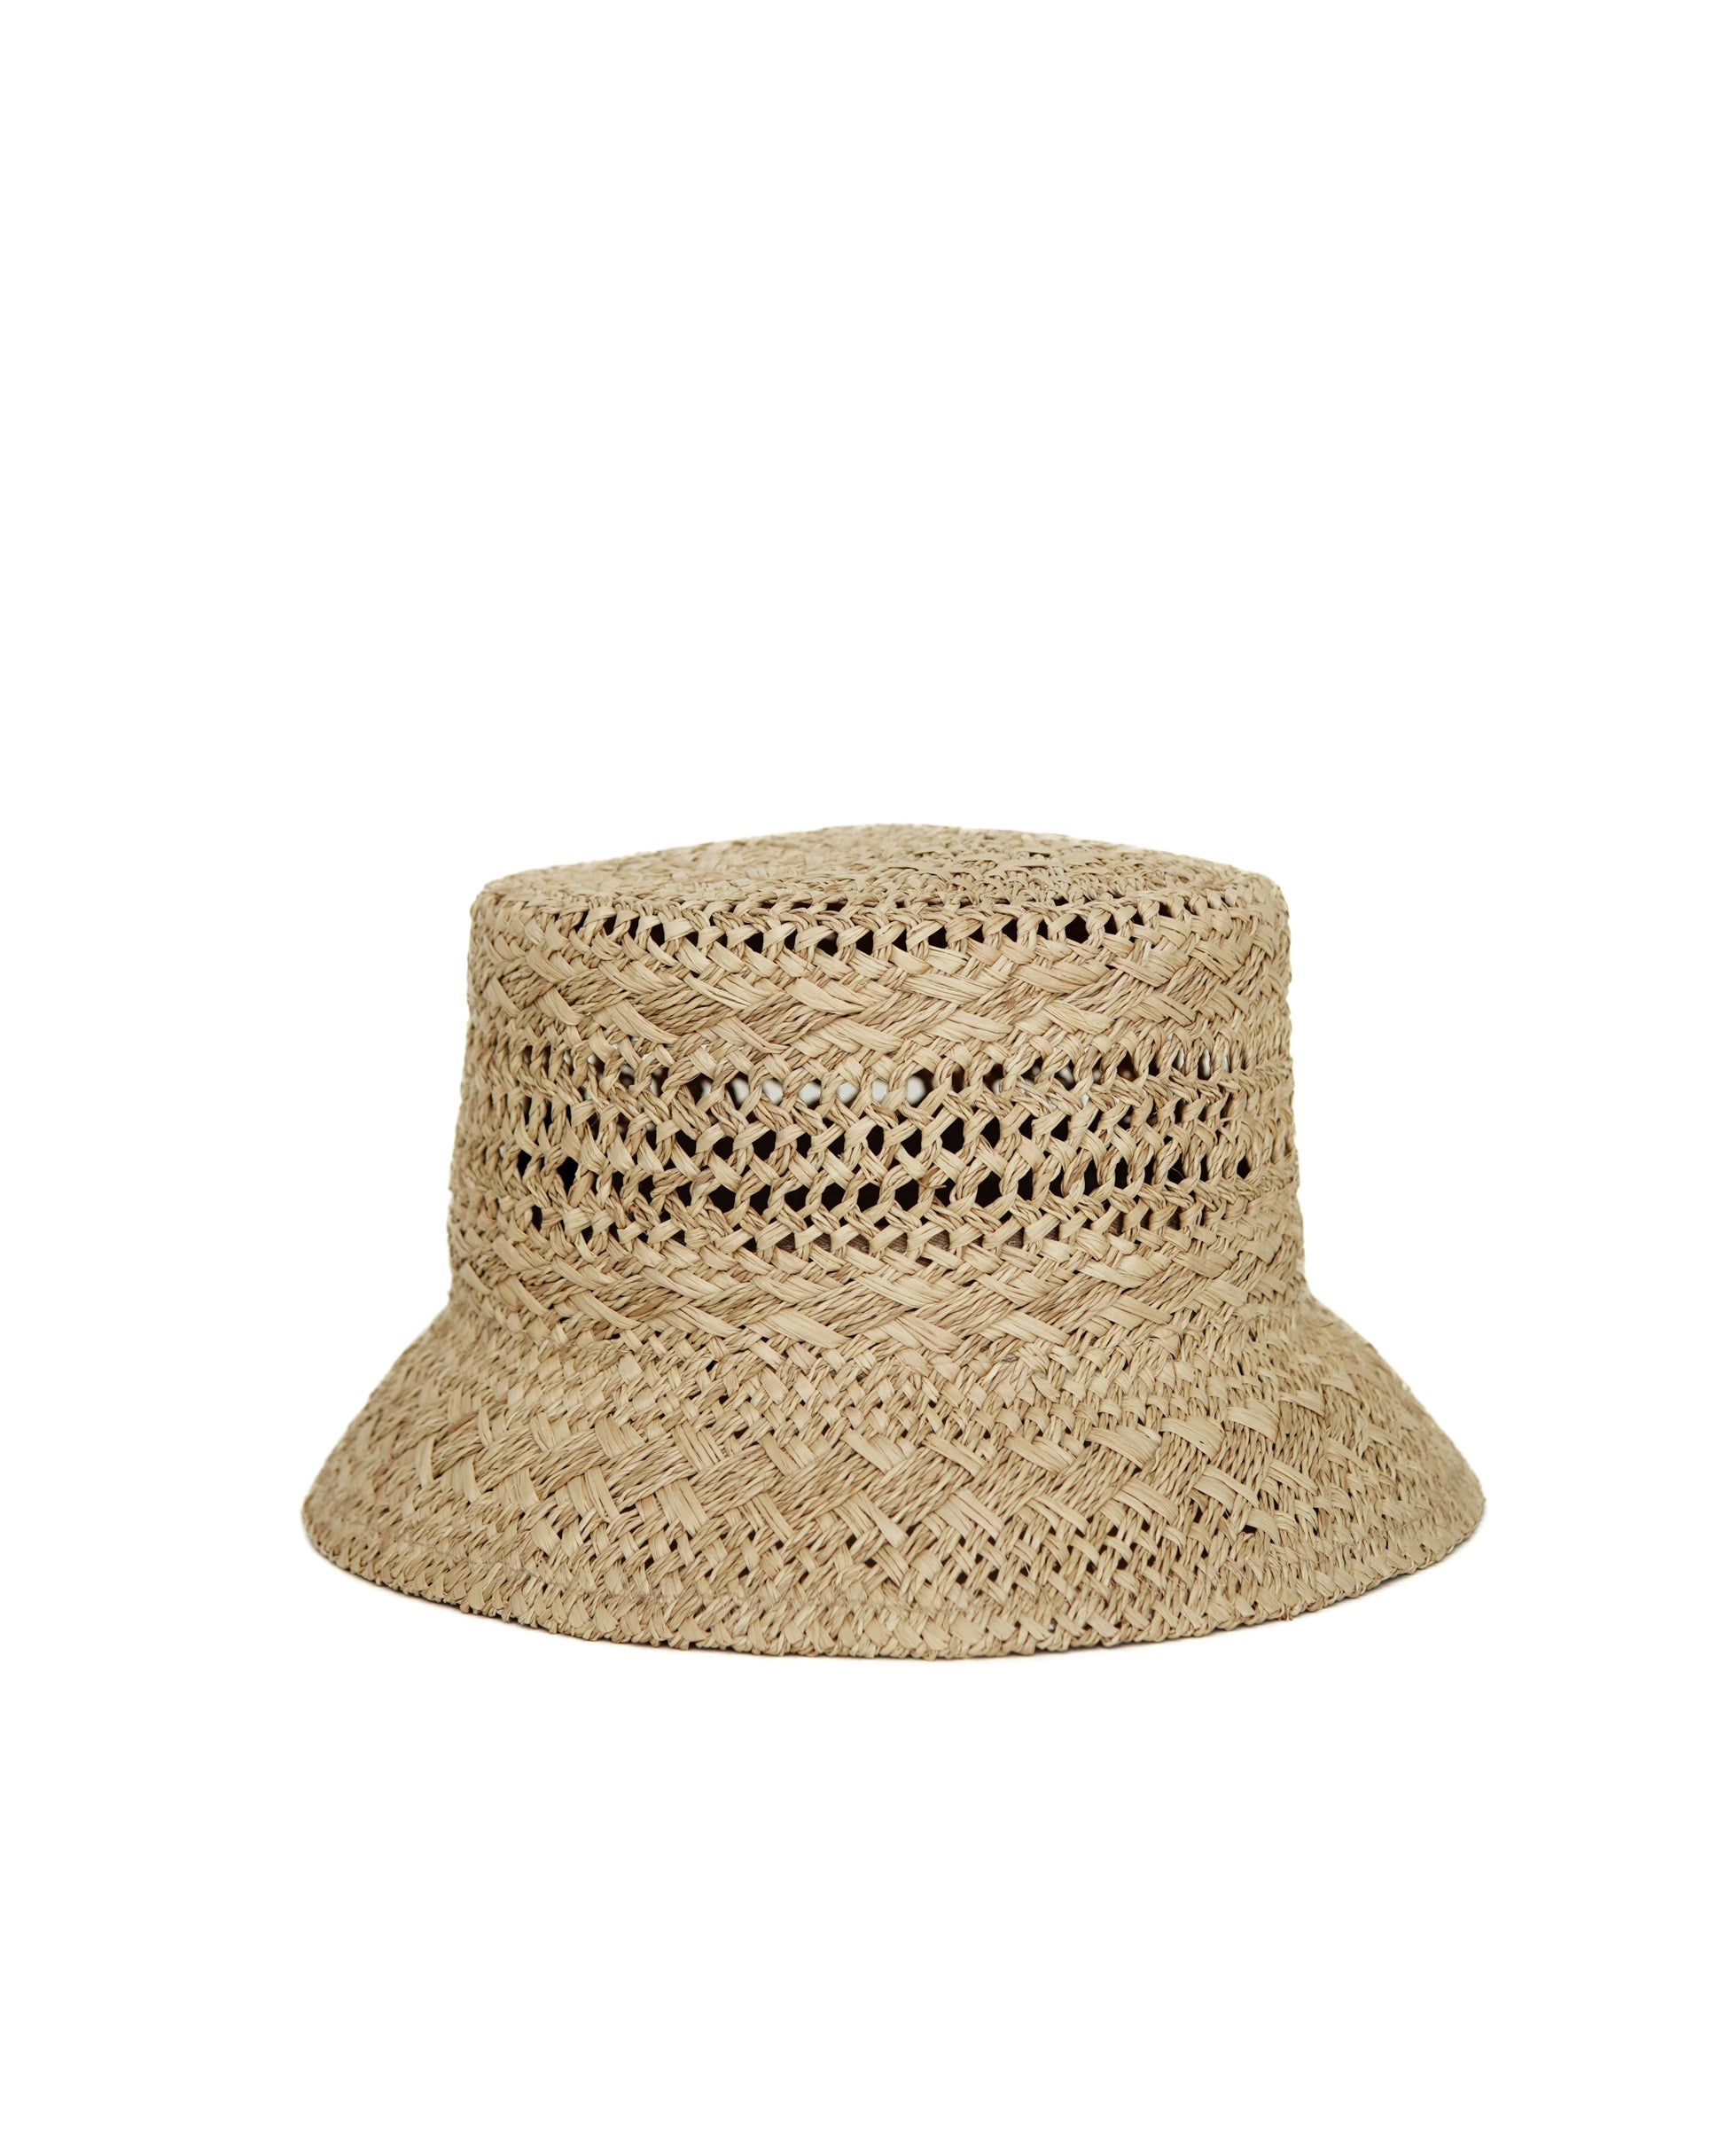 Raffia Bucket Hat | Women's Straw Hat | Women's Bucket Hat M/L (59)